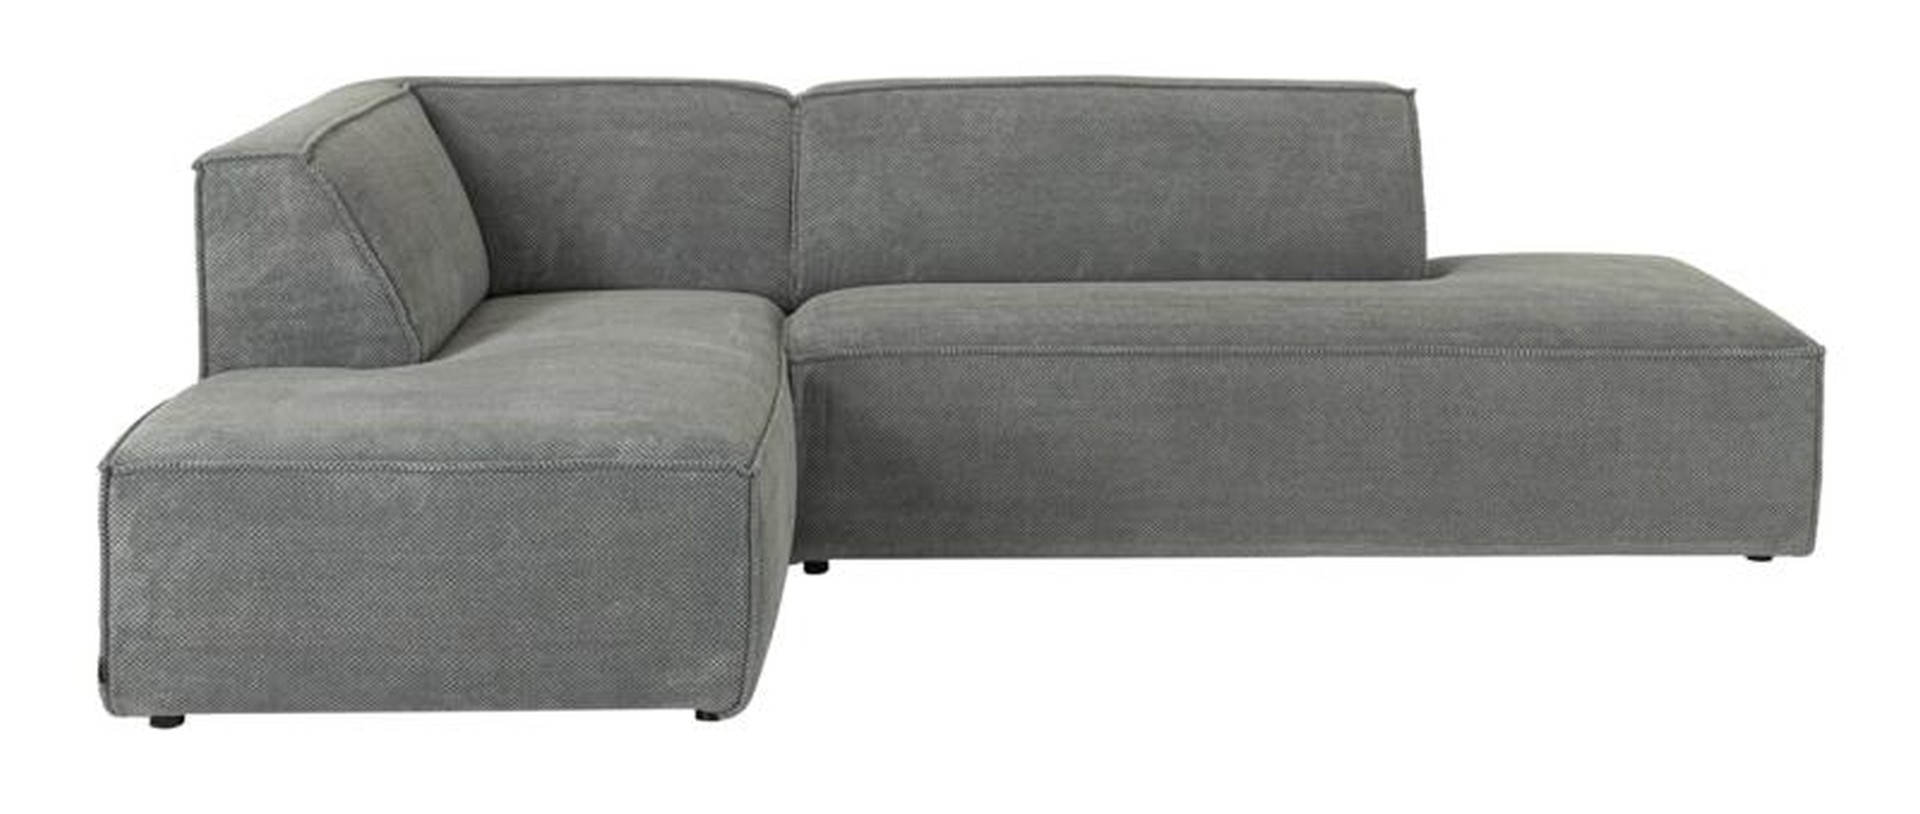 Das Ecksofa Cliff wurde aus weichem Stoff gefertigt, welcher einen Grauen Farbton besitzt. Das Sofa überzeugt mit seinem modernem Design. Diese Variante hat die Ausführung Links.